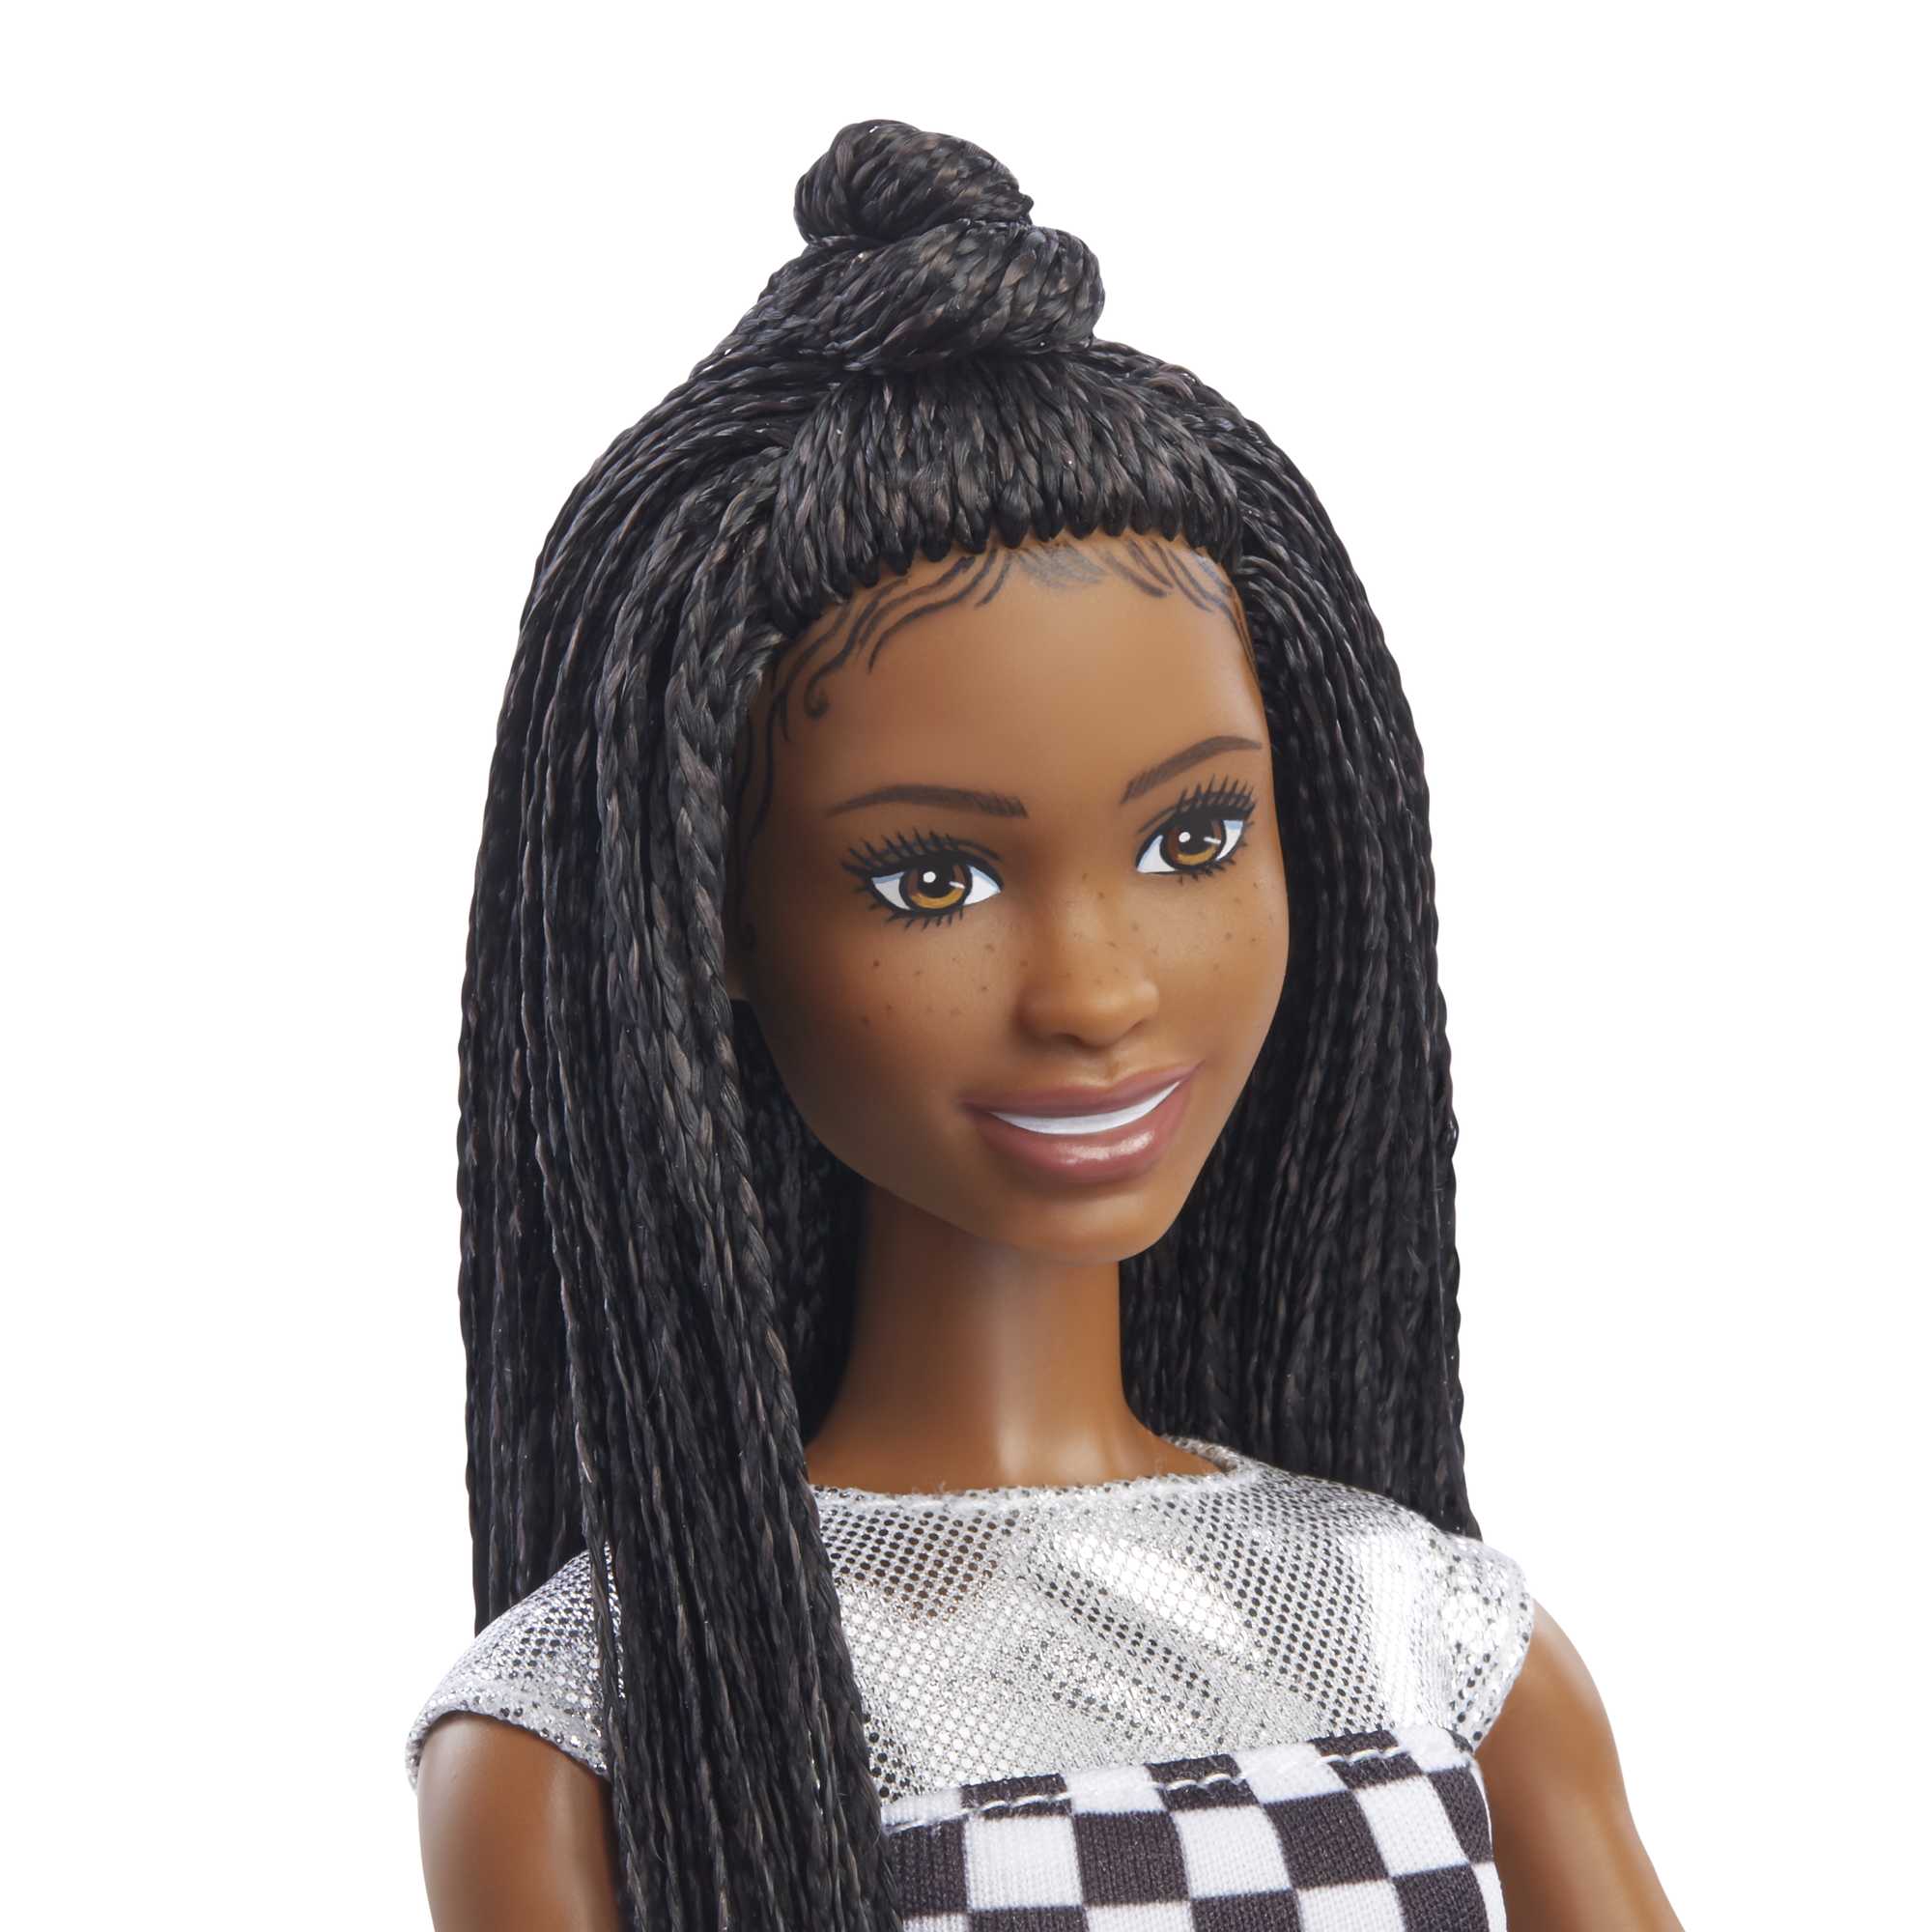 lade Papua Ny Guinea Skuldre på skuldrene Barbie Big City Big Dreams Doll GXT04 | Mattel